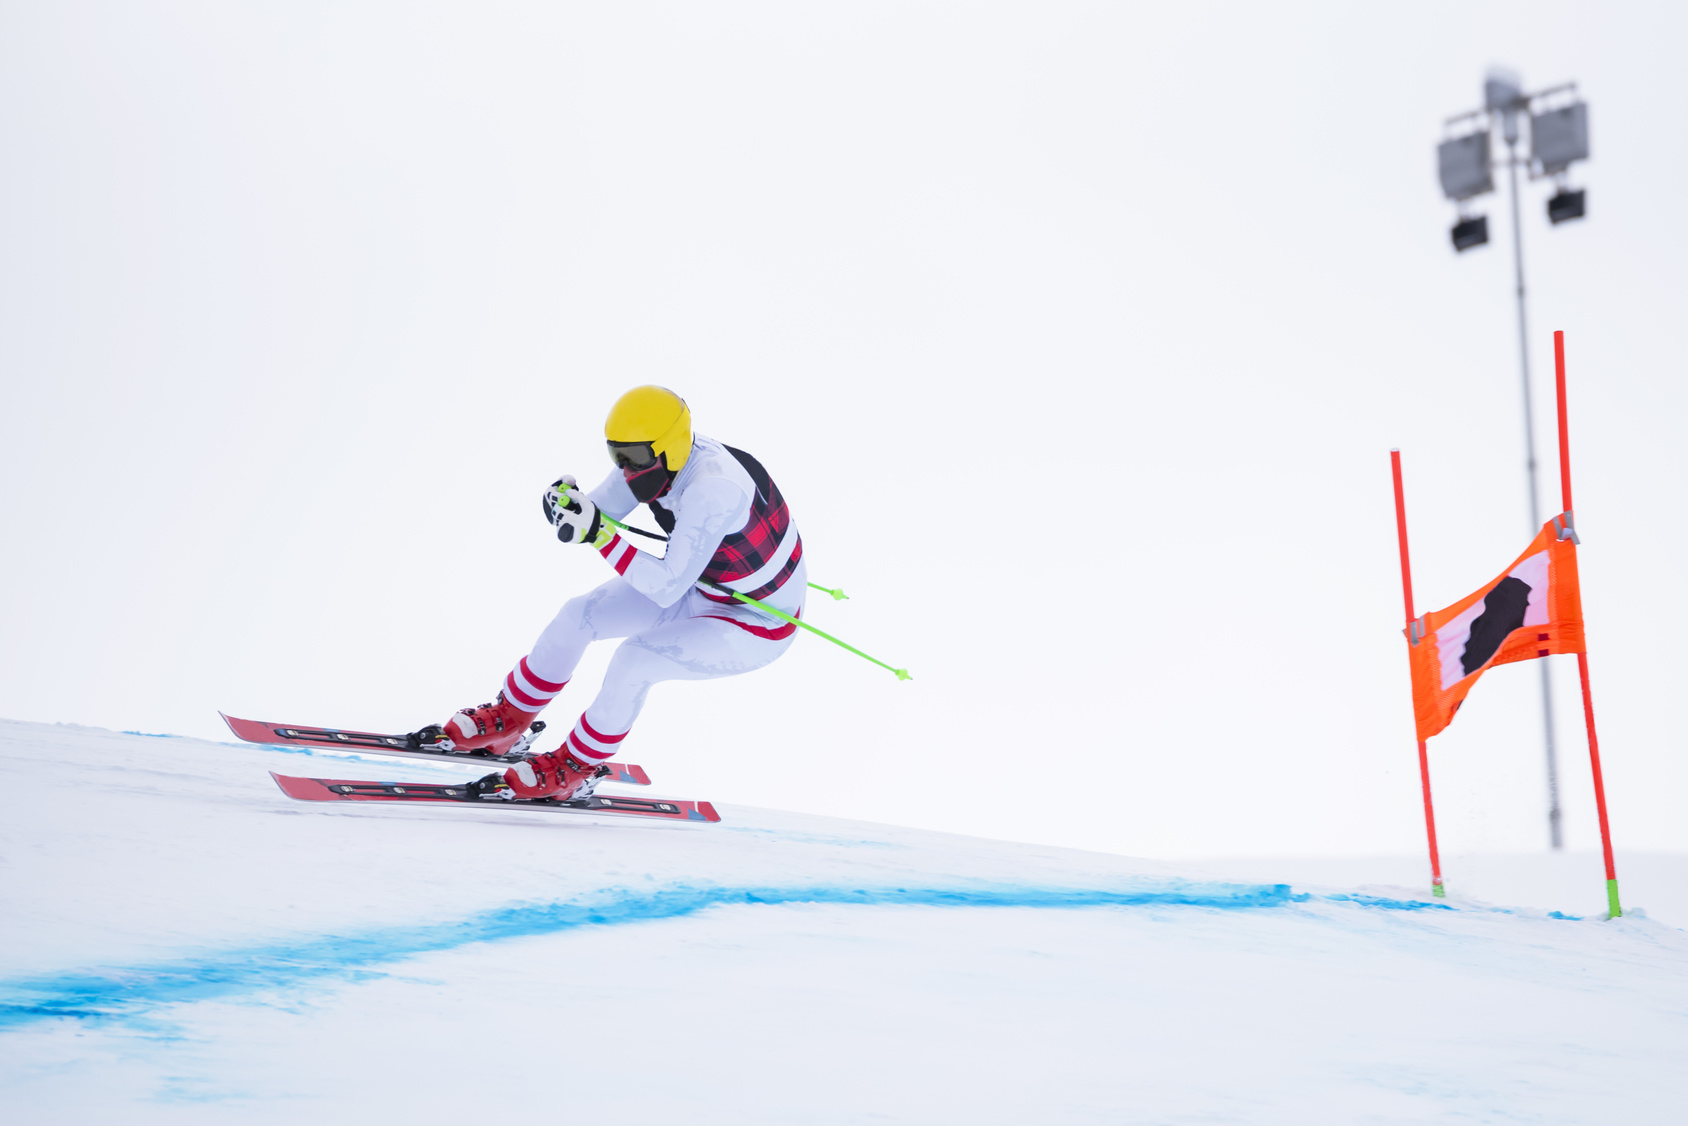 Sur des pentes extrêmes, les skieurs les plus rapides dépassent les 250 km/h. © Nikokvfrmoto, fotolia